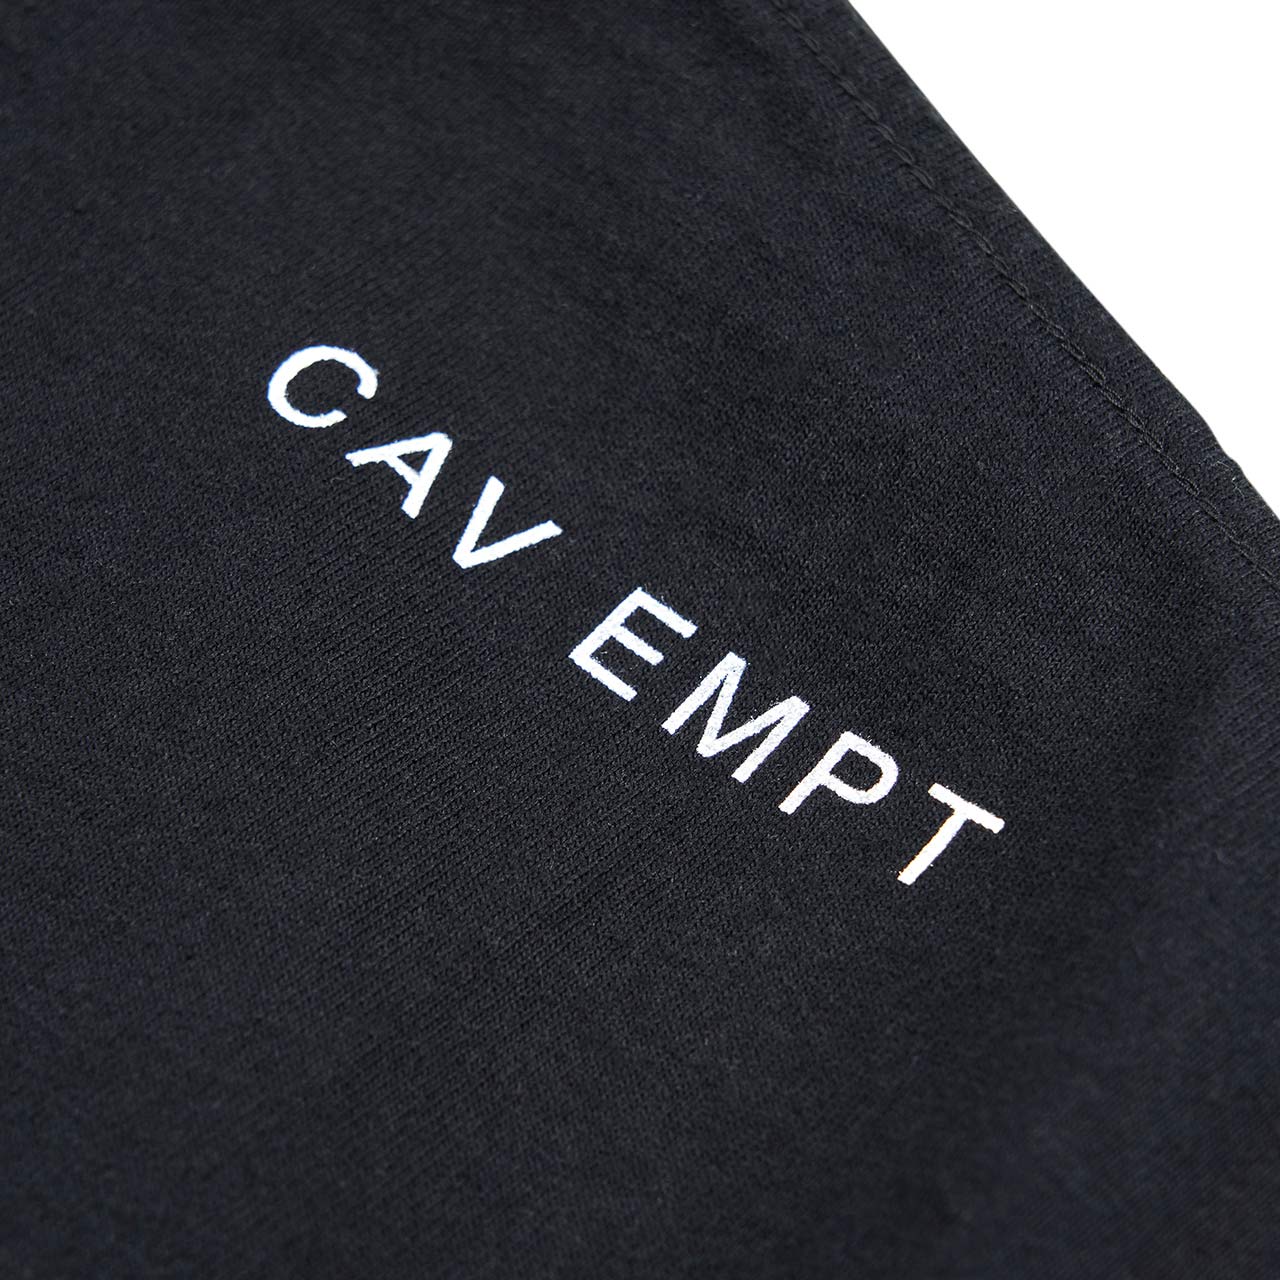 cav empt cav empt industrial regime t-shirt (black)